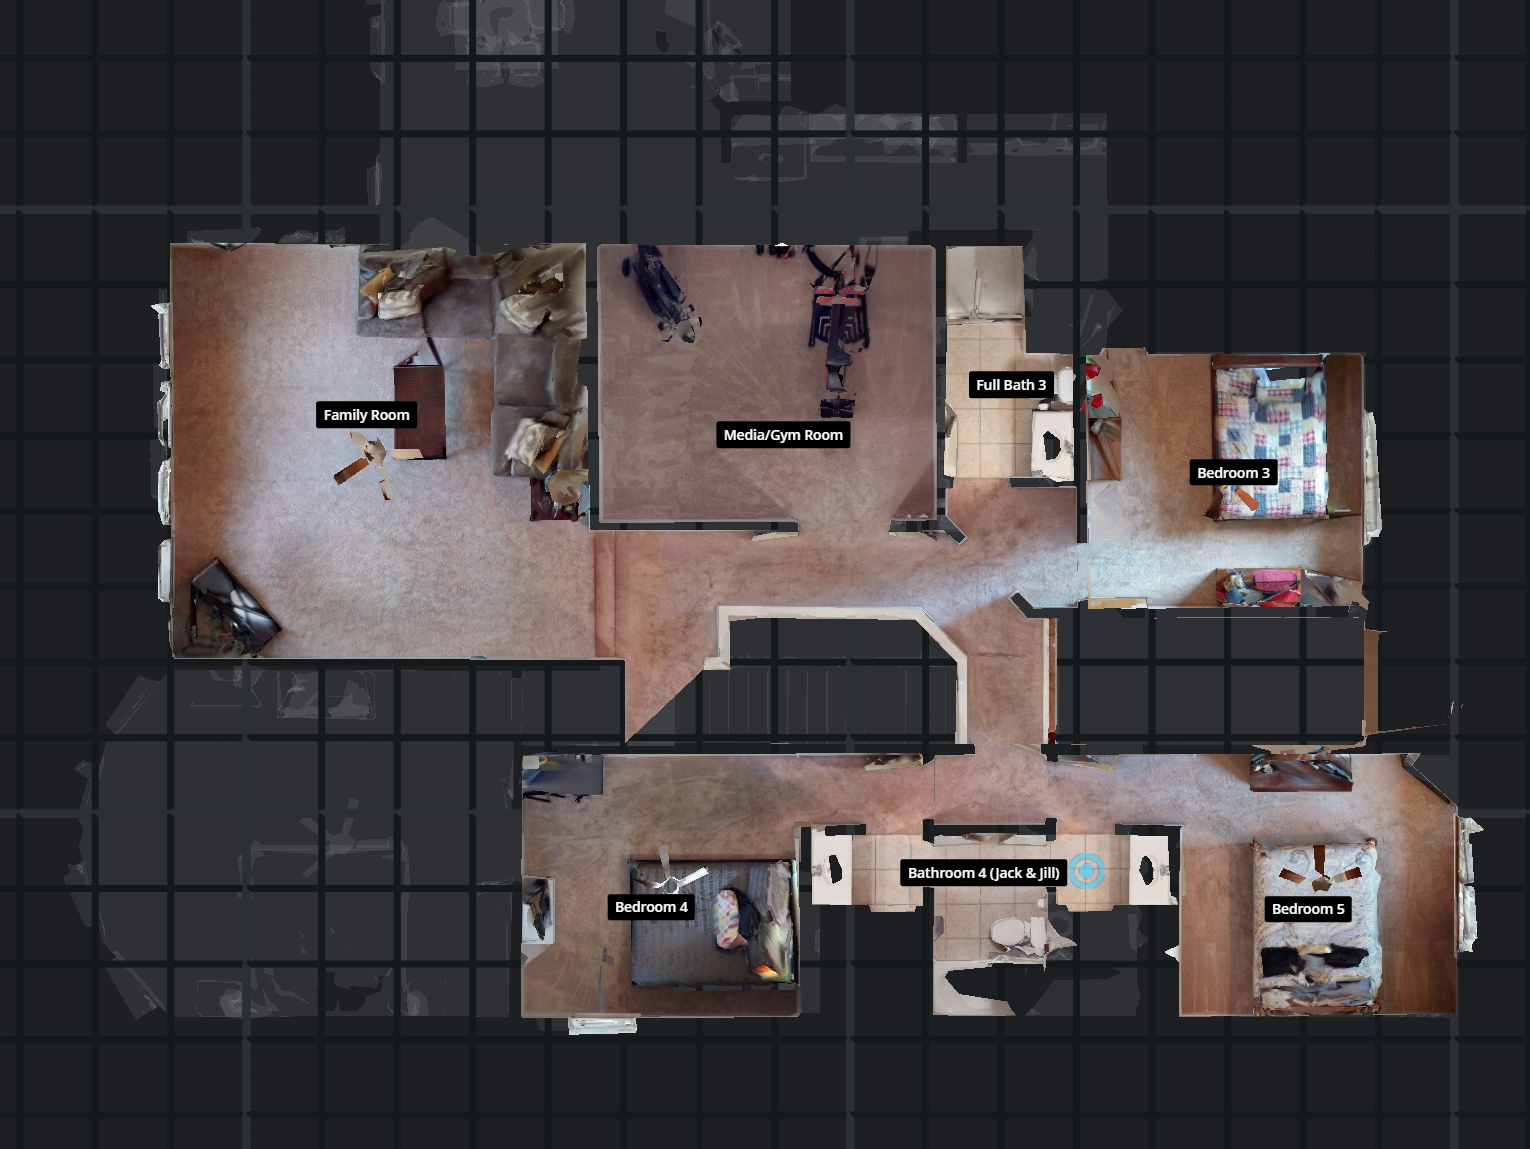 2nd Floor Floor Plan